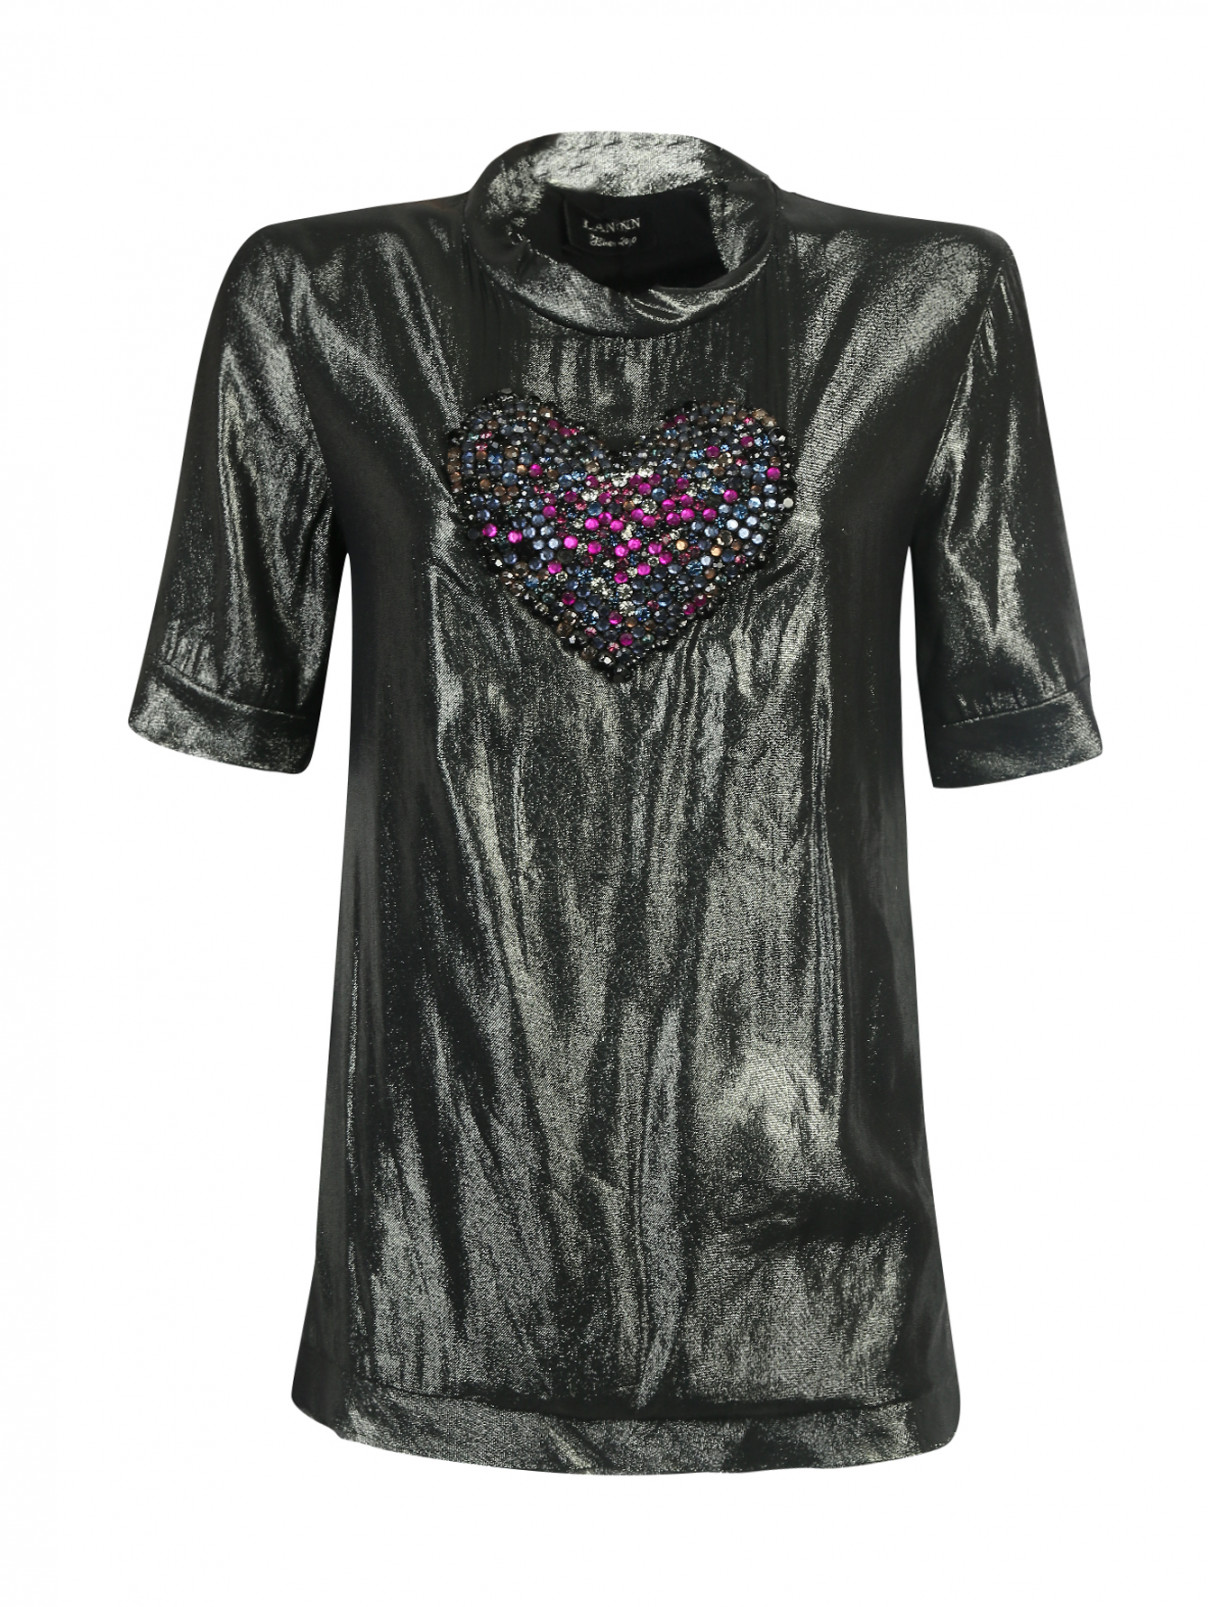 Шелковая блуза, декорированная стразами Lanvin  –  Общий вид  – Цвет:  Зеленый